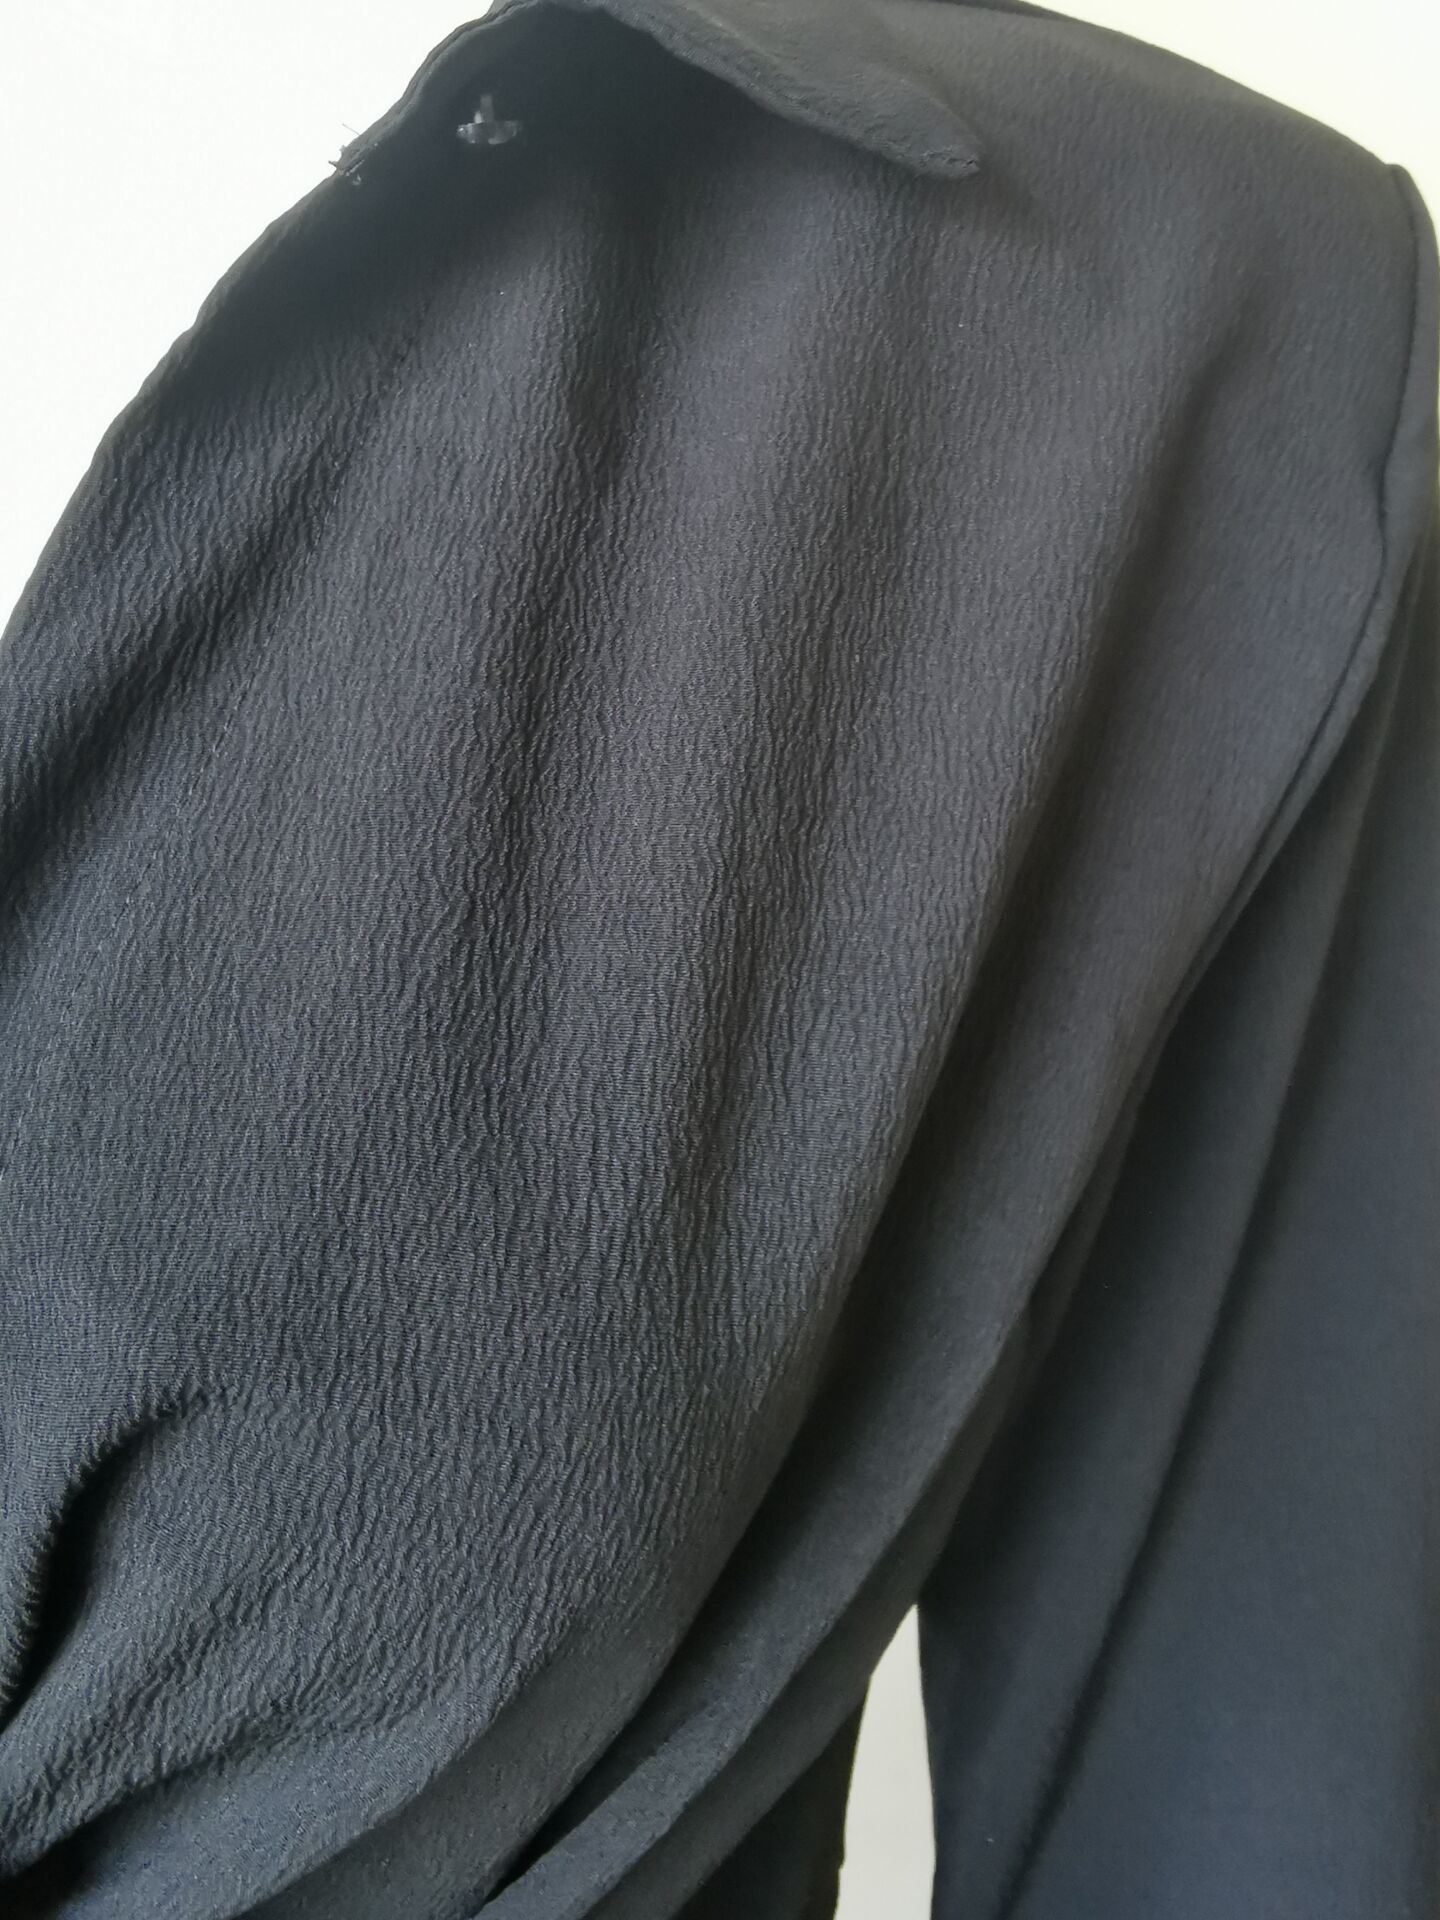 Black Padded Shoulder Shirt Dress in Dresses